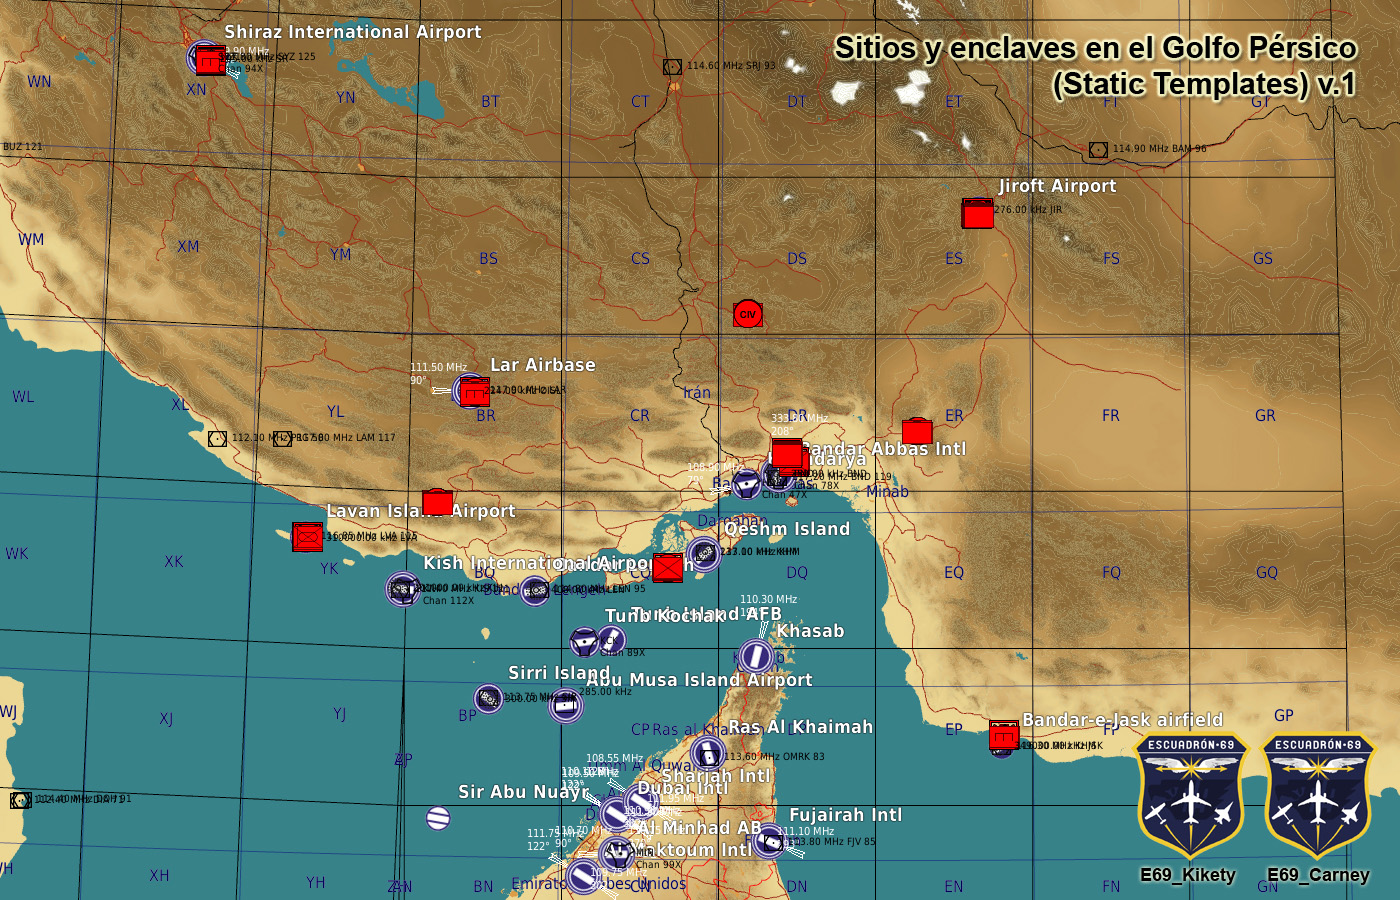 Sitios y enclaves en el Golfo Pérsico (Static Templates) no mods – v.1